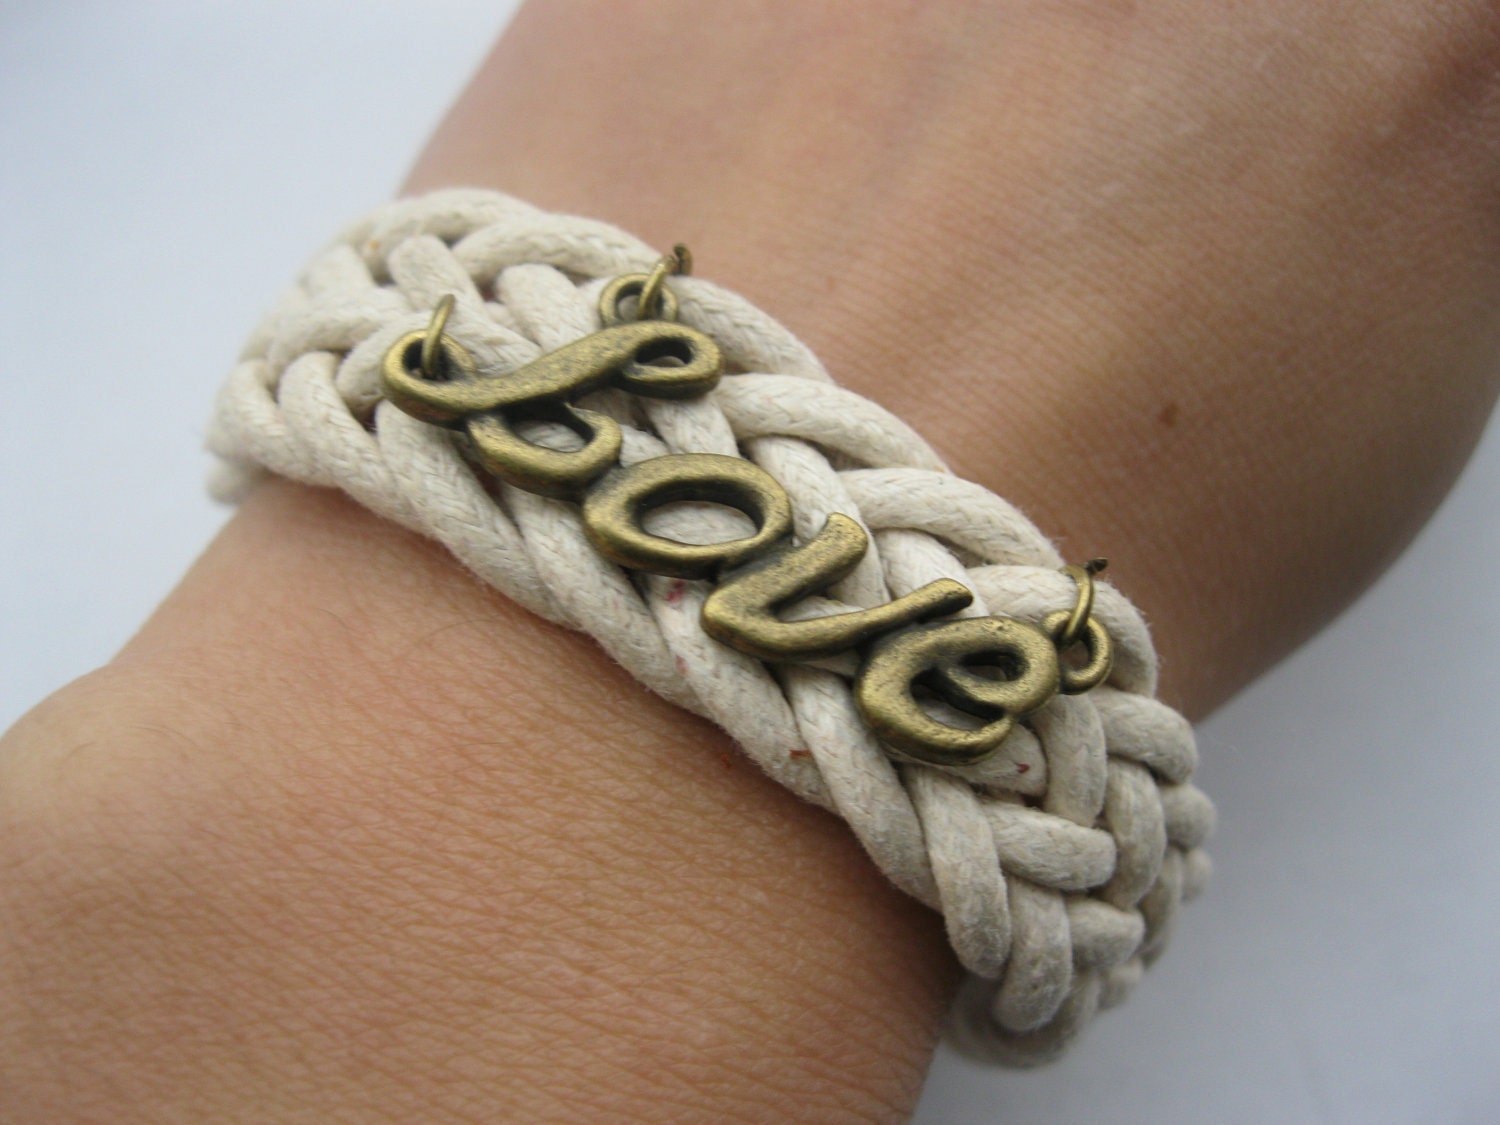 Bracelet-antique love wax cords bracelet,love bracelet